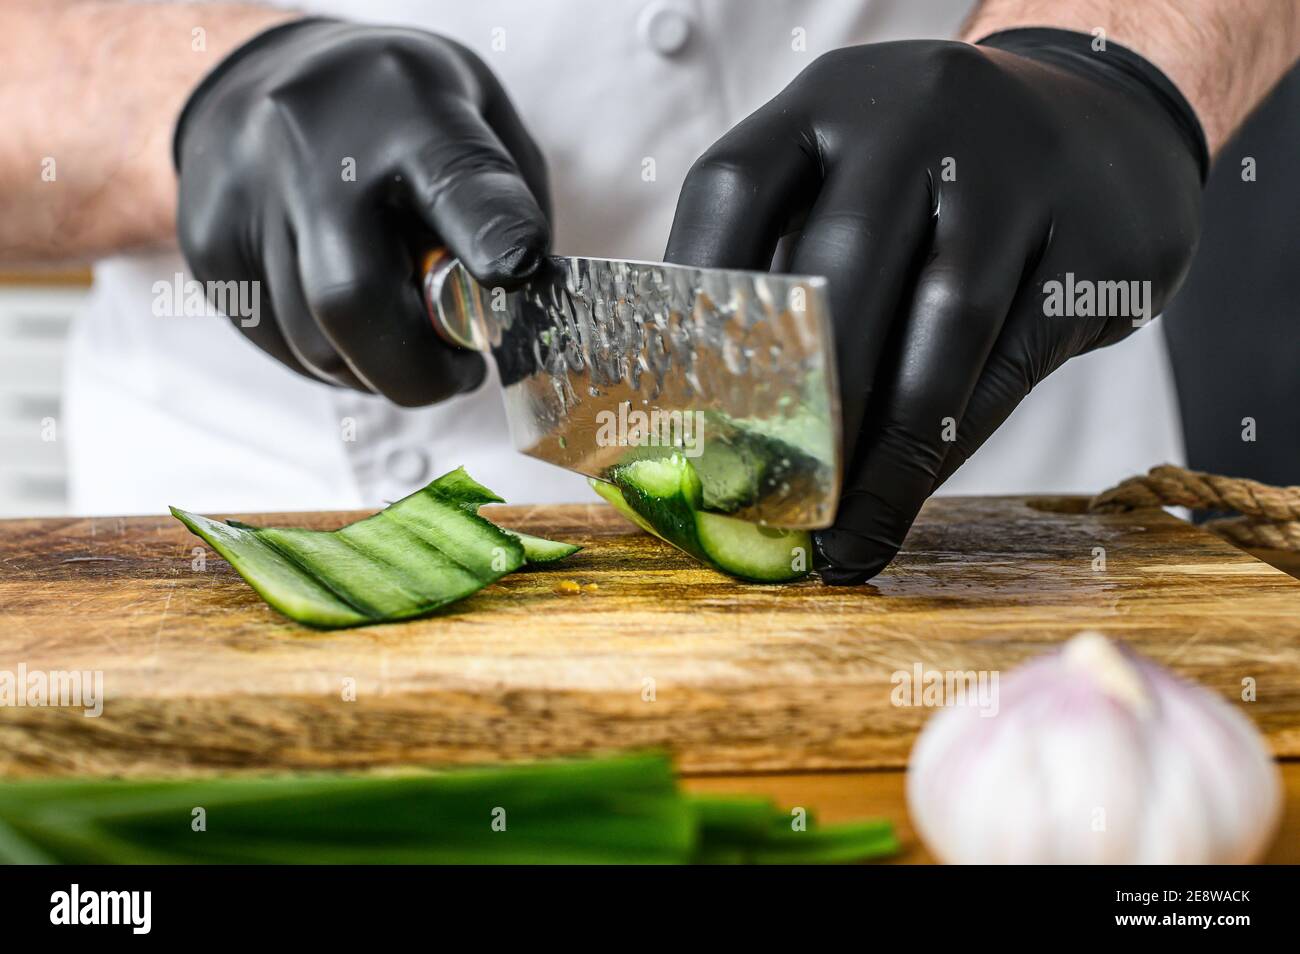 solamente social músculo Un chef en guantes negros está cortando un pepino verde fresco en una tabla  de cortar de madera. Concepto de cocinar alimentos orgánicos saludables  Fotografía de stock - Alamy